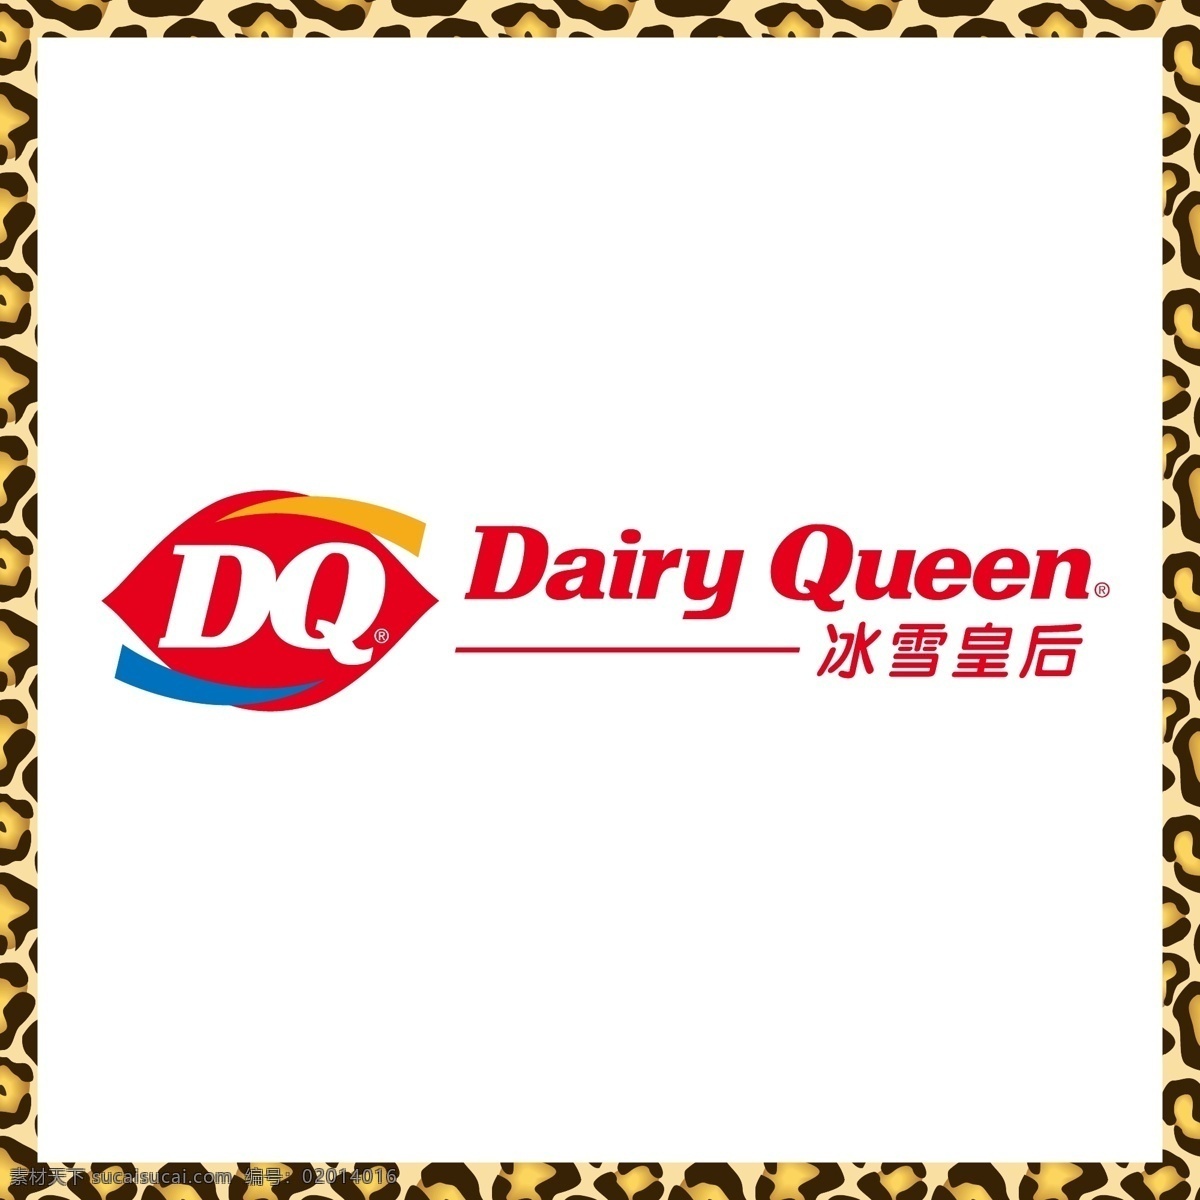 冰雪 皇后 冰淇淋 冰雪皇后 哈根达斯 雪糕 夹心饼干 蛋卷 logo 标志 矢量 vi logo设计